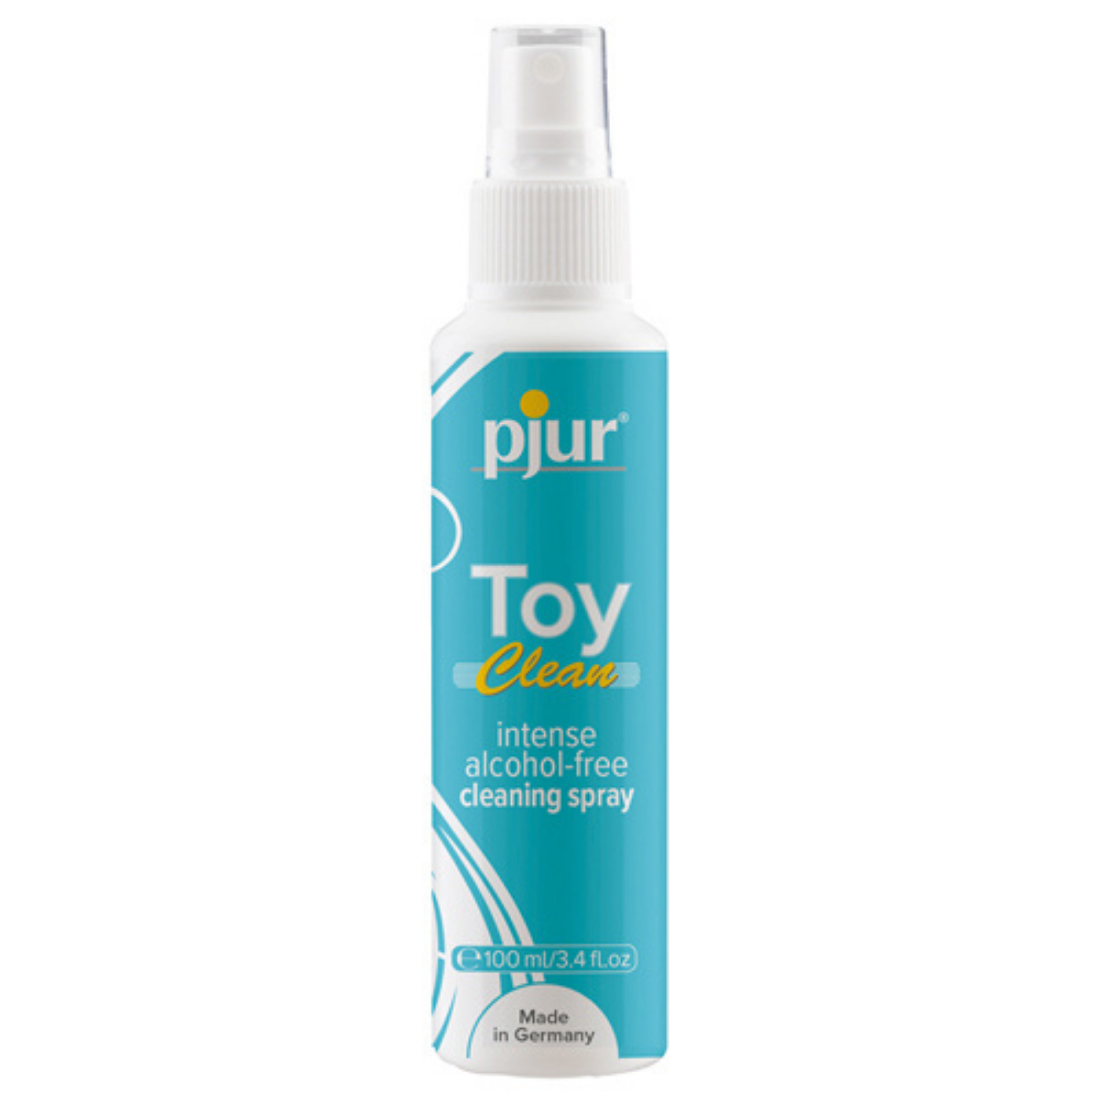 Flesje Toy Cleaner, ook wel Toy reiniger genoemd van Pjur. Te koop bij Flavourez.